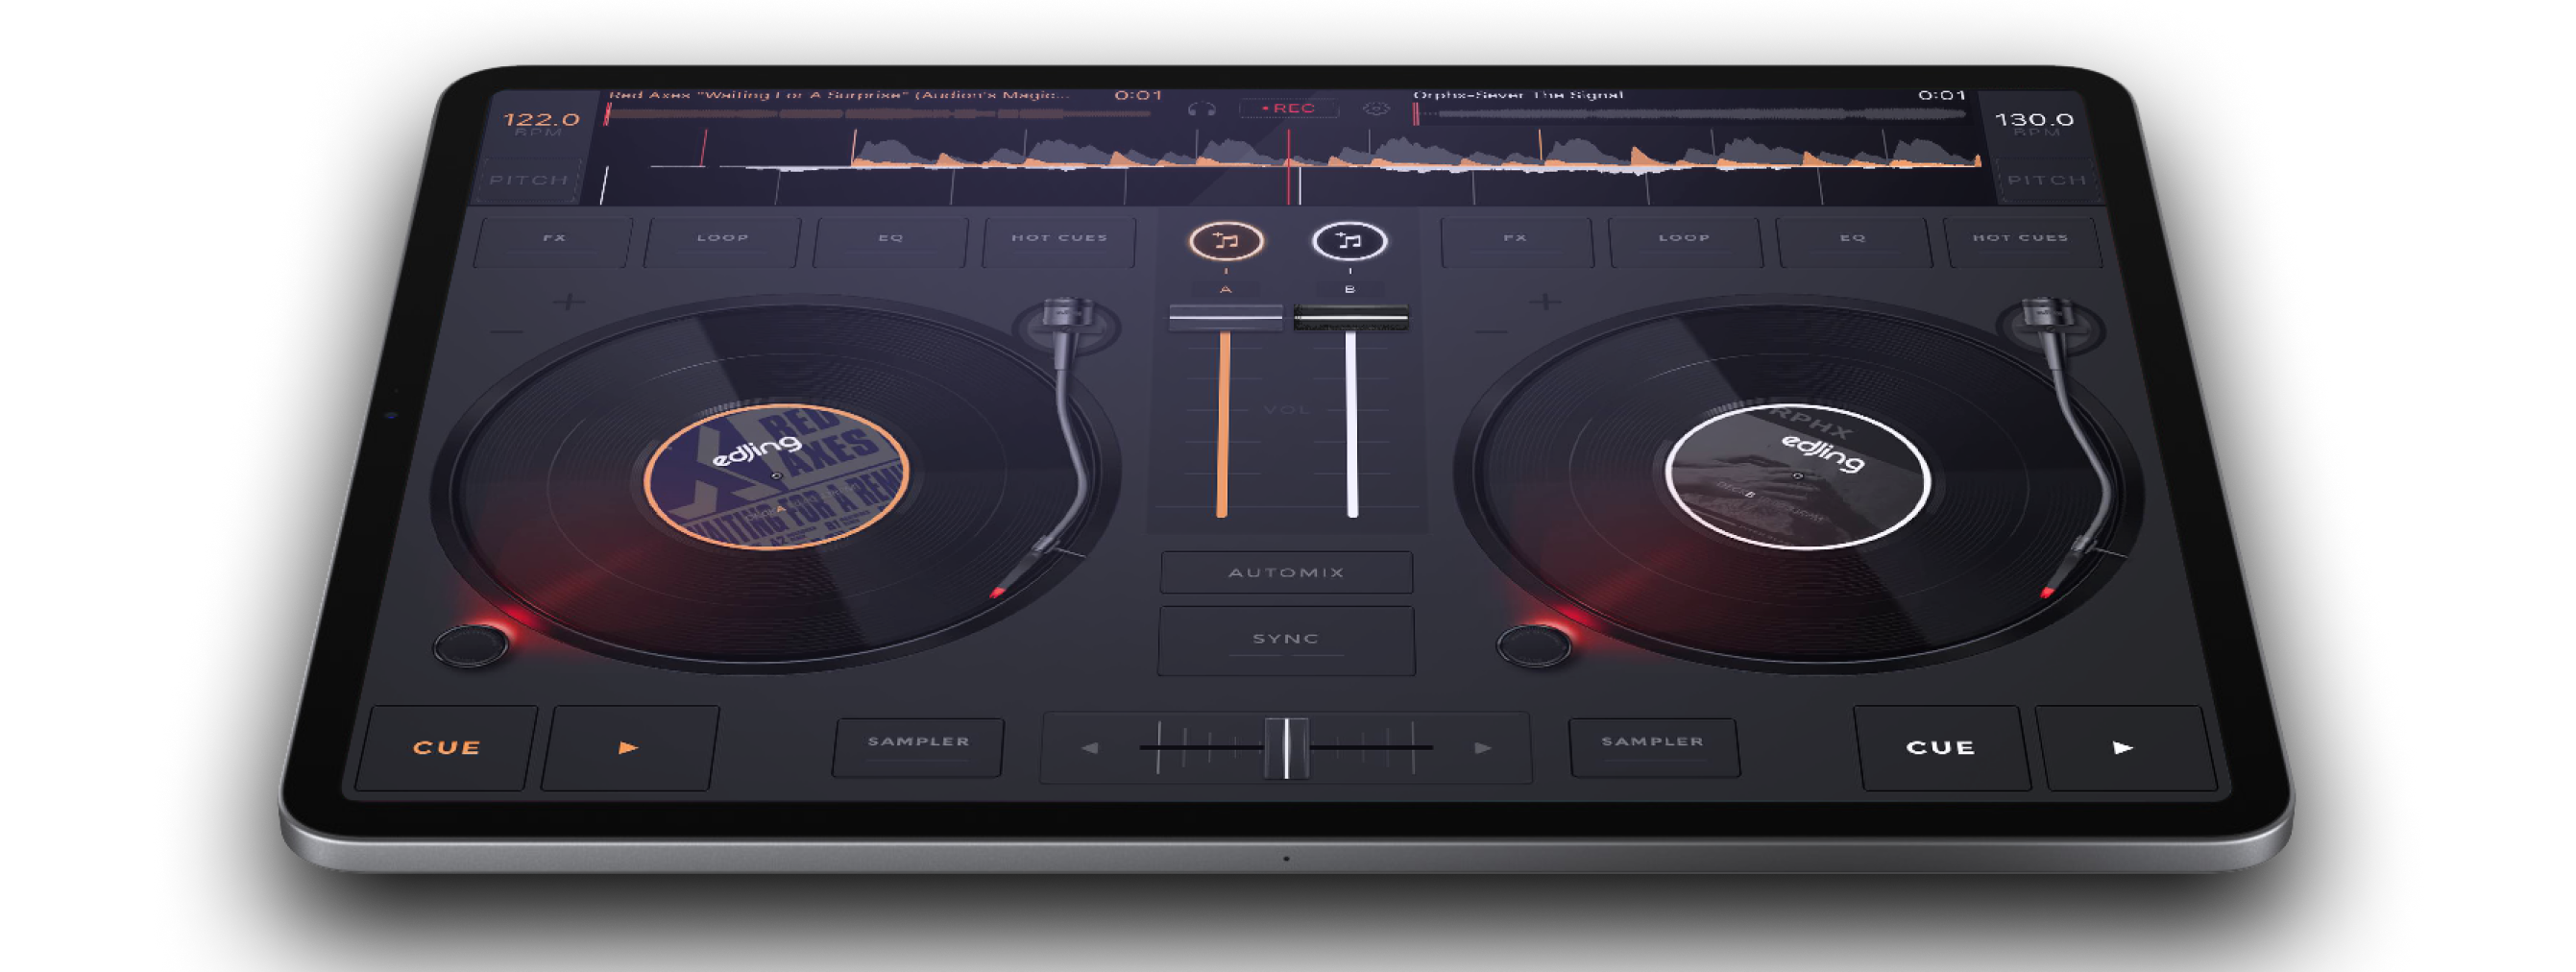 Edjing Mix: DJ Music Mixer